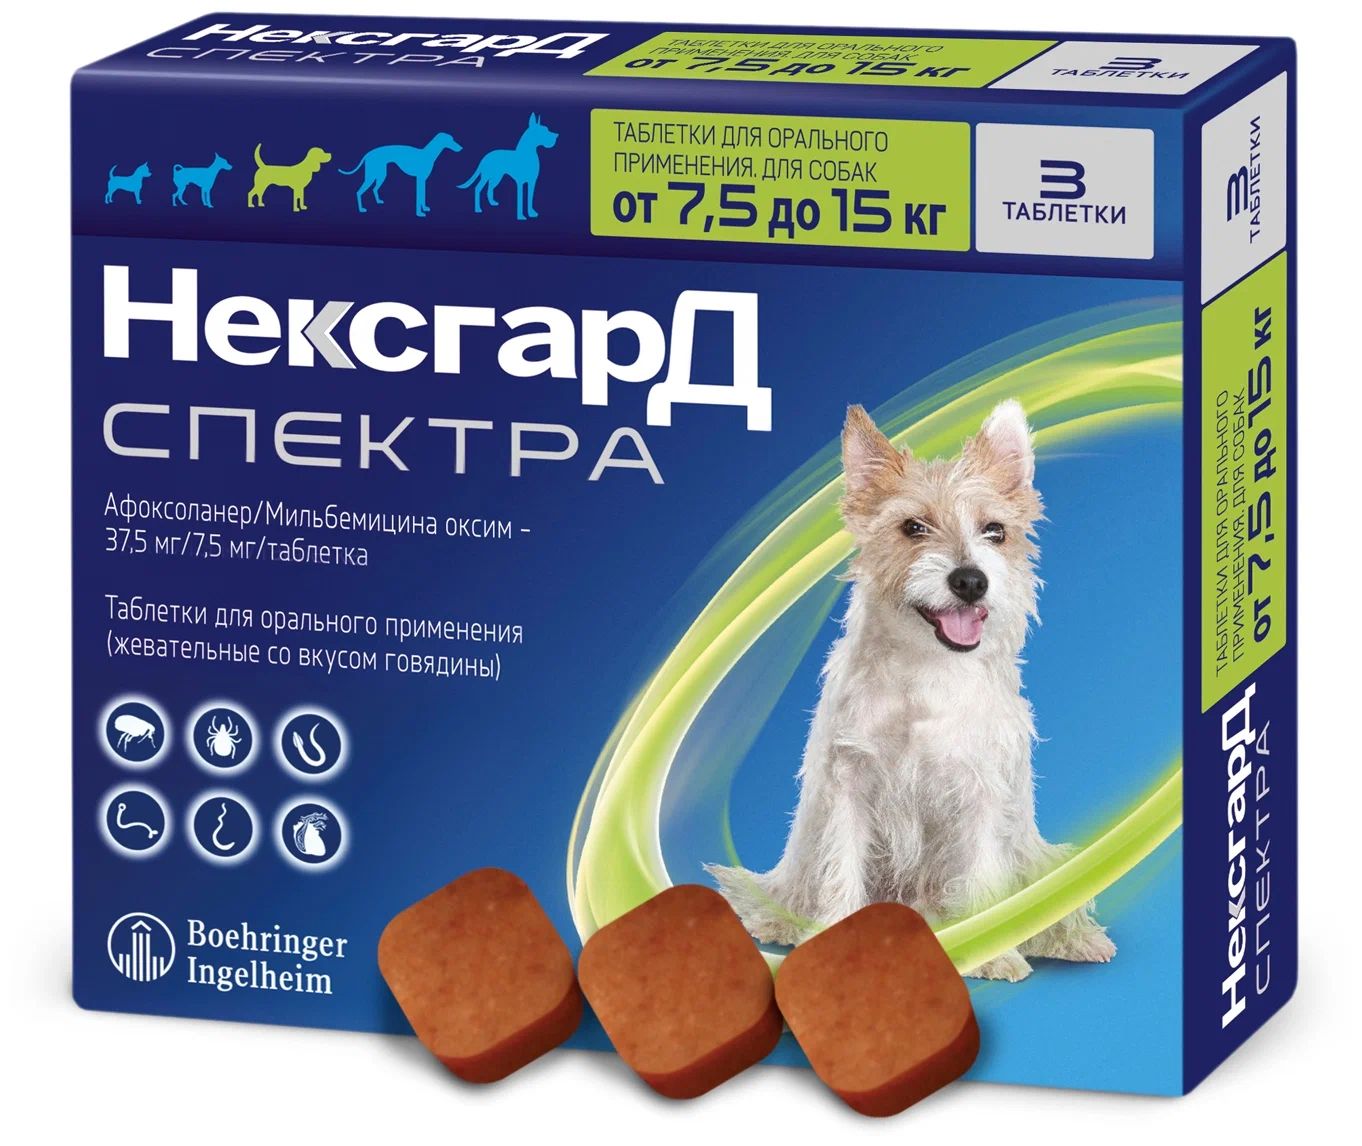 Купить таблетку от клещей нексгард. НЕКСГАРД спектра для собак 7.5-15 кг. НЕКСГАРД для собак. Нетсгард спектра для собак. Фронтлайн НЕКСГАРД спектра для собак.